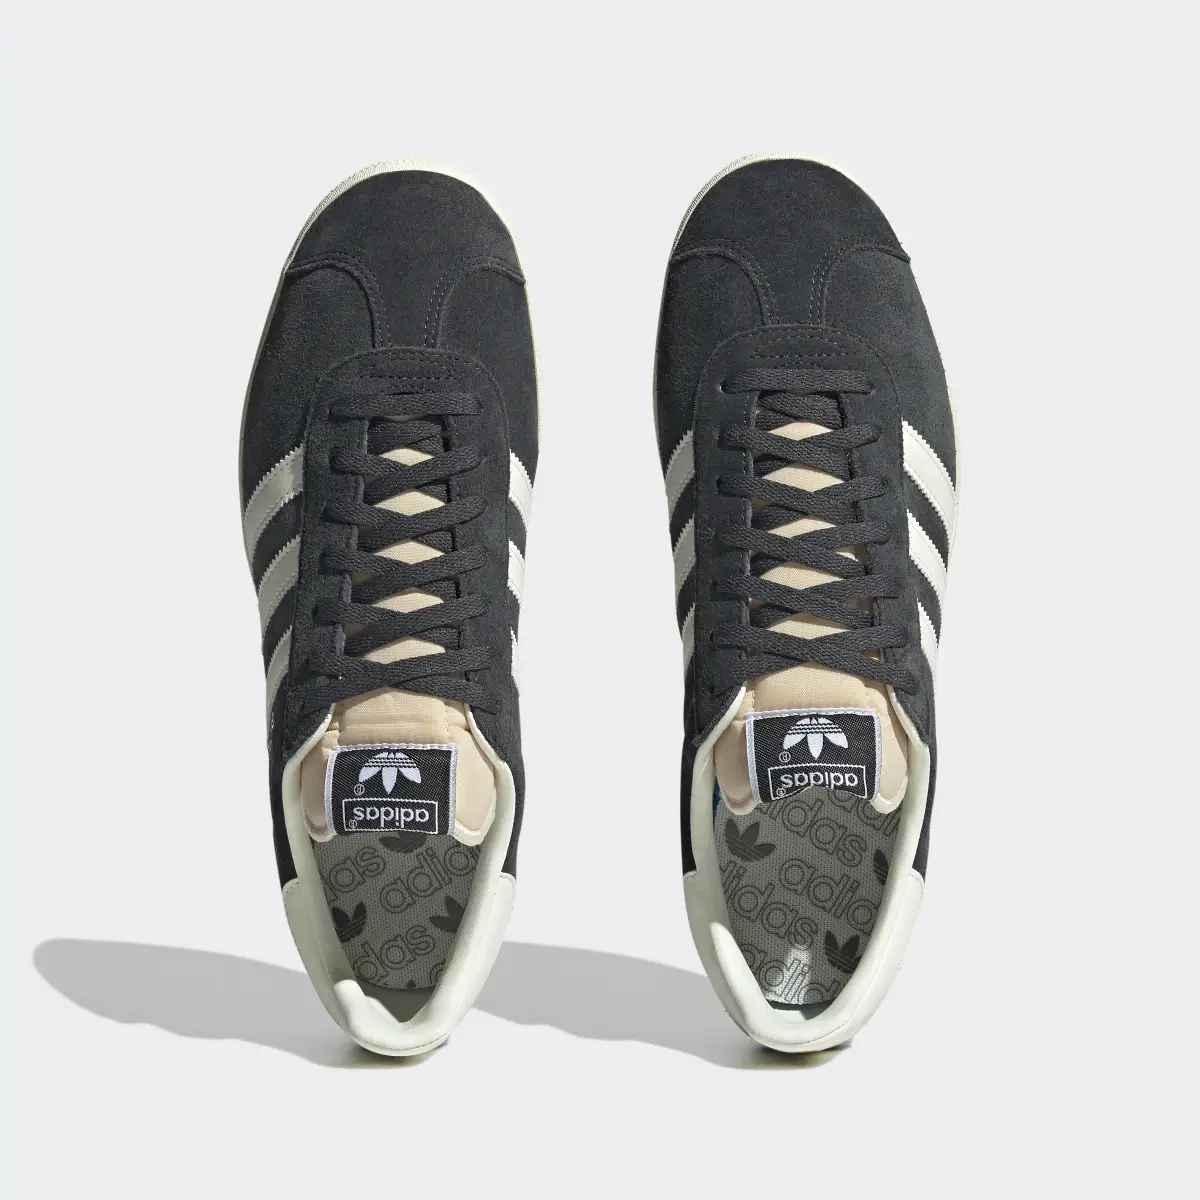 Adidas Gazelle Shoes. 3